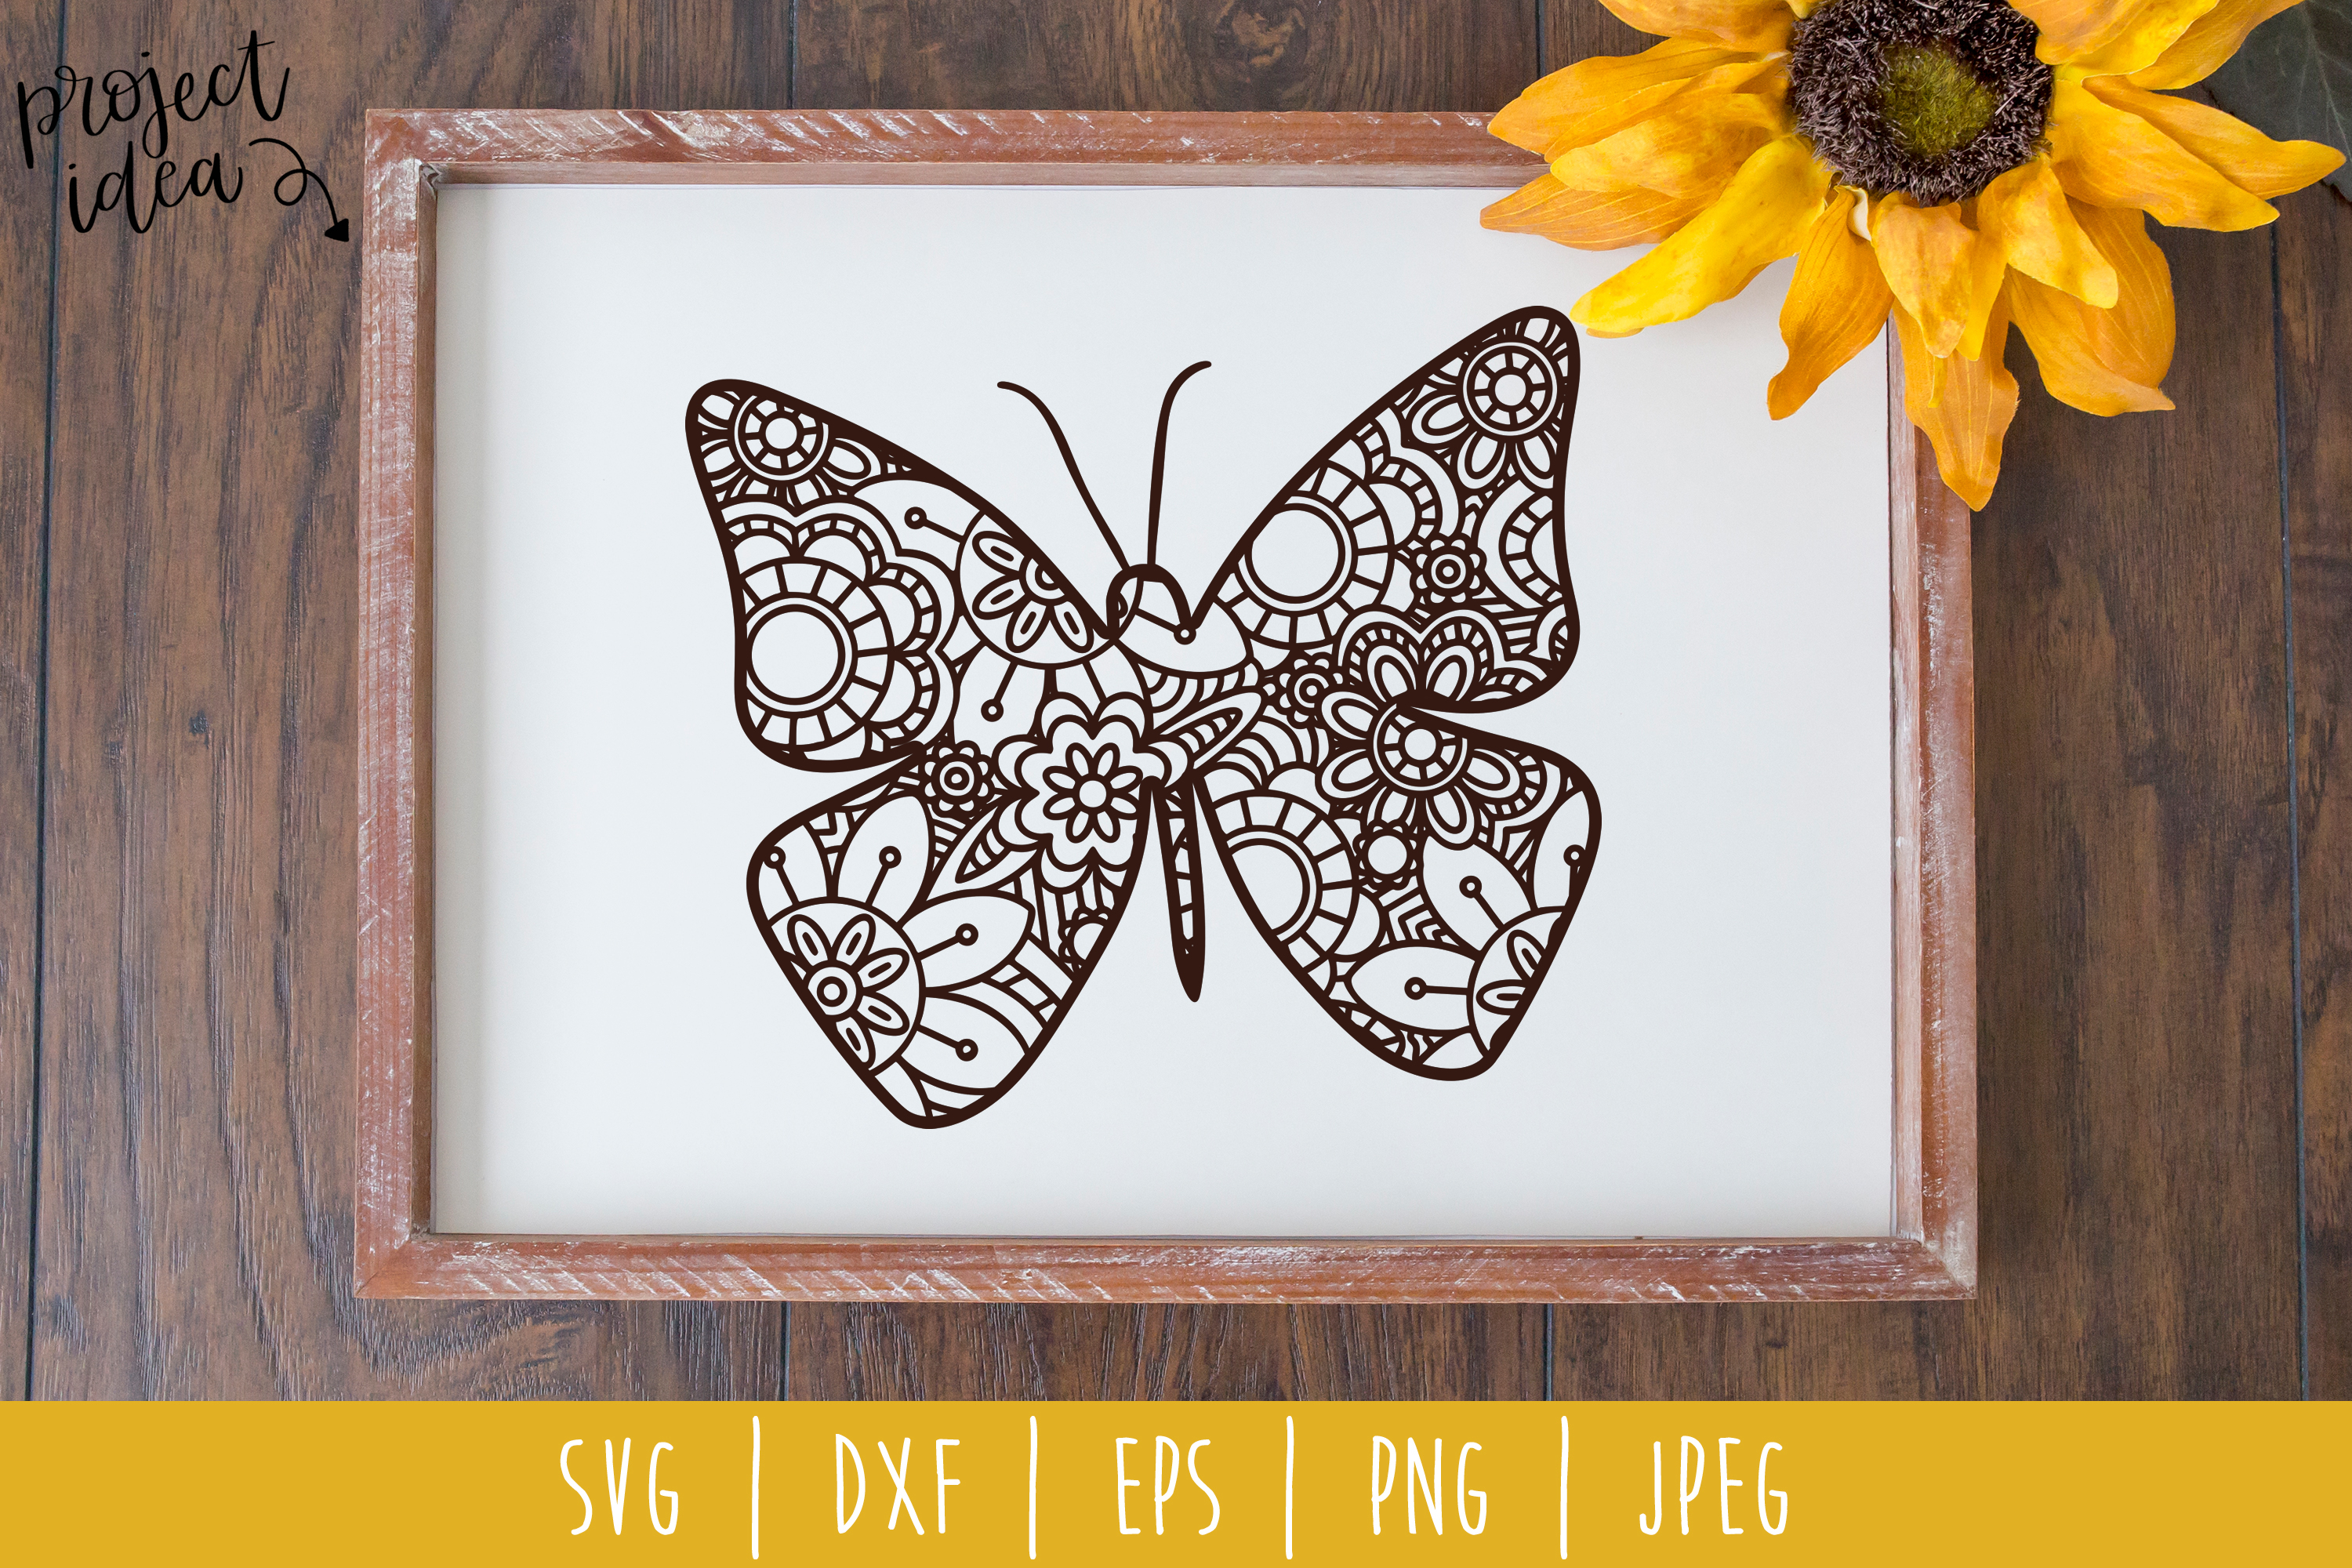 Butterfly Mandala Zentangle SVG, DXF, EPS, PNG, JPEG ...